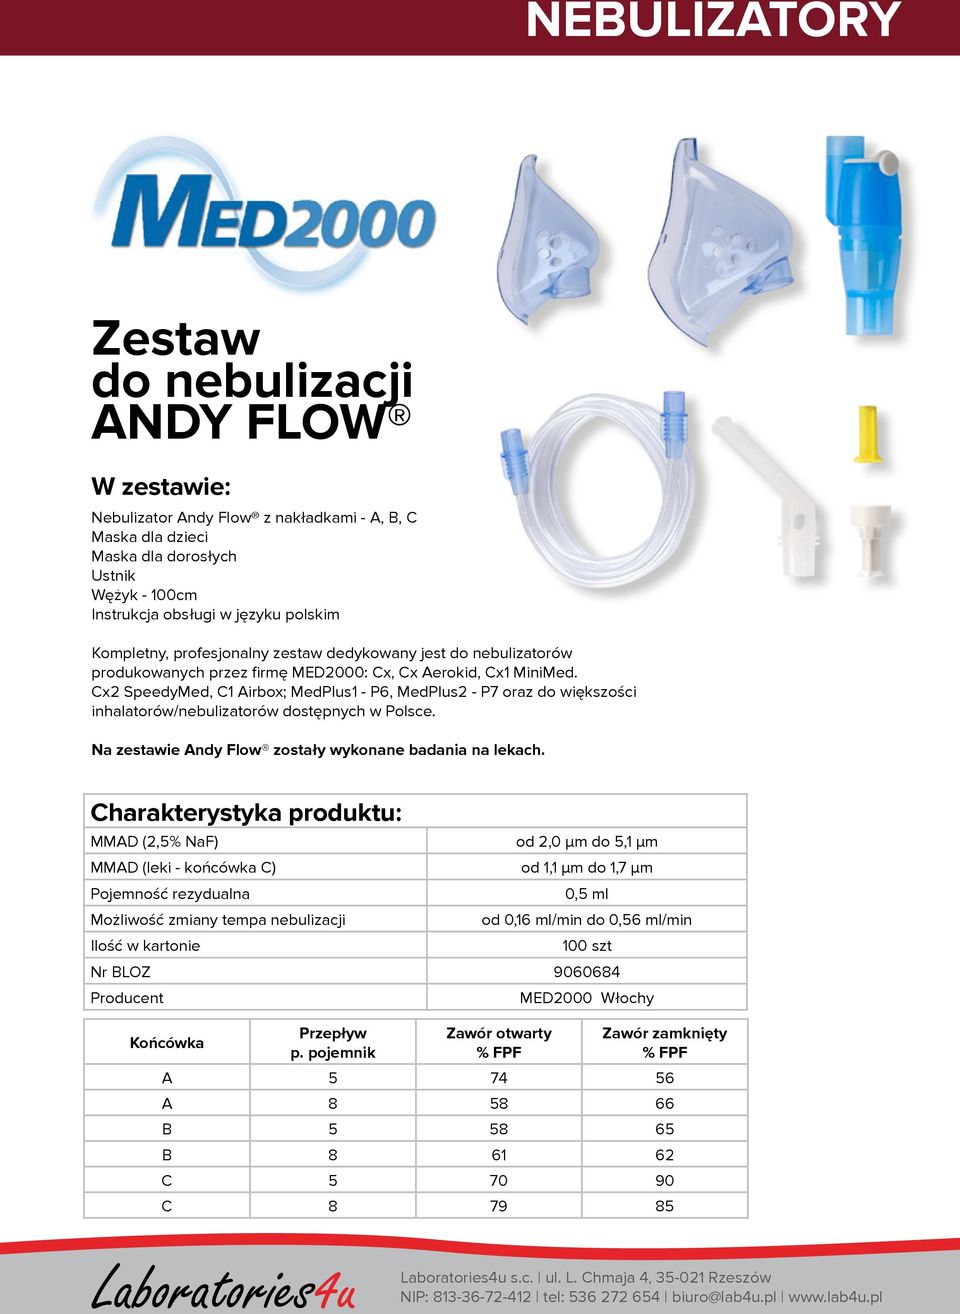 Cx2 SpeedyMed, C1 Airbox; MedPlus1 - P6, MedPlus2 - P7 oraz do większości inhalatorów/nebulizatorów dostępnych w Polsce. Na zestawie Andy Flow zostały wykonane badania na lekach.